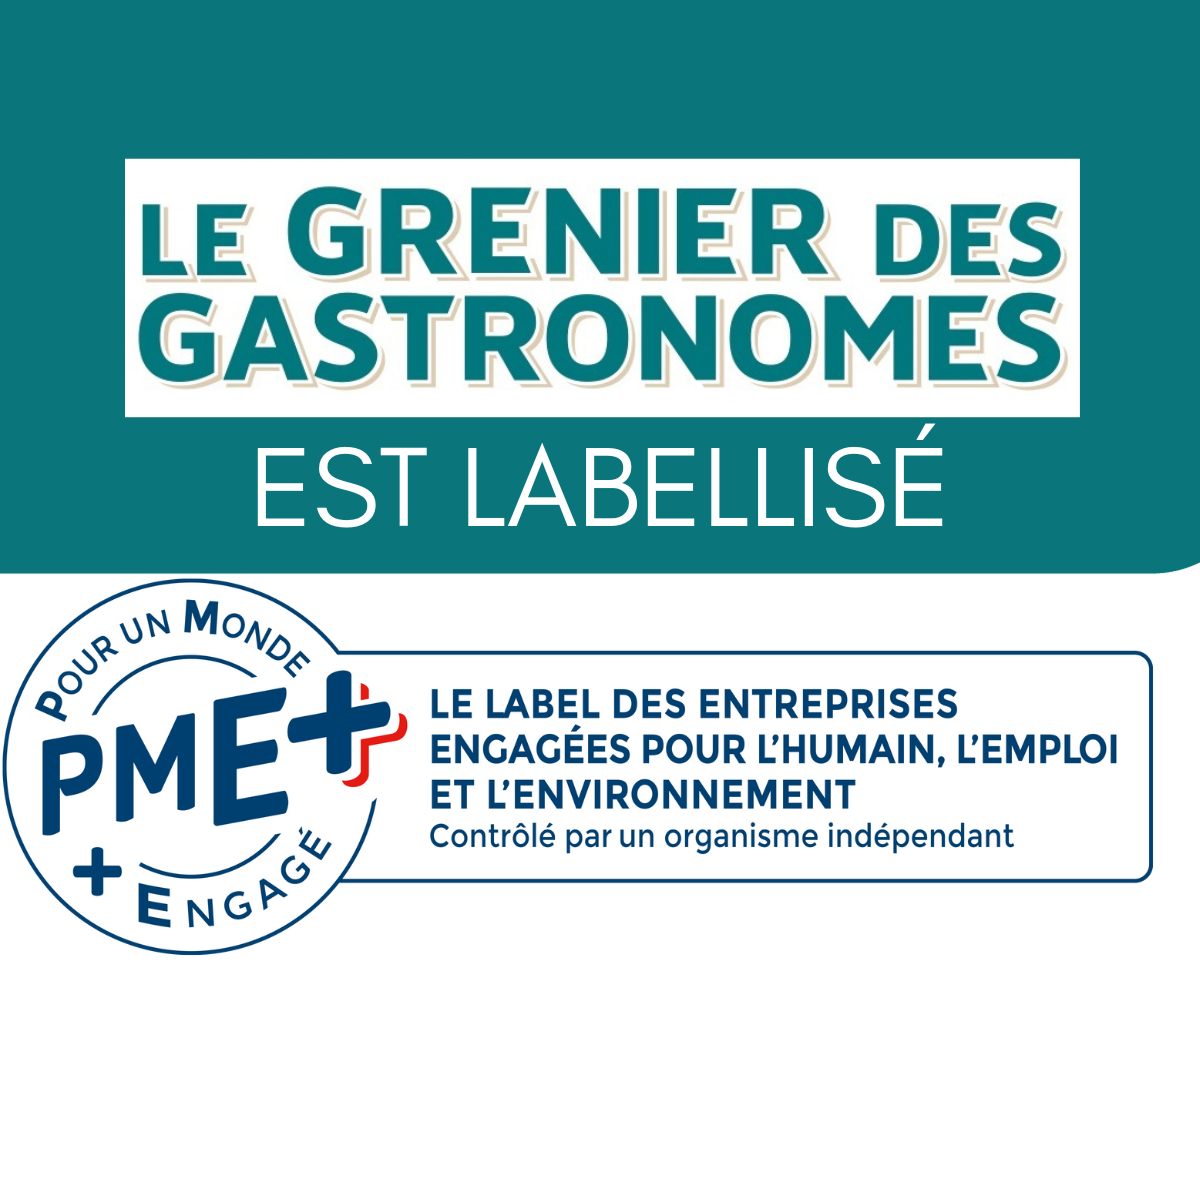 Le Grenier des Gastronomes labellisé PME+